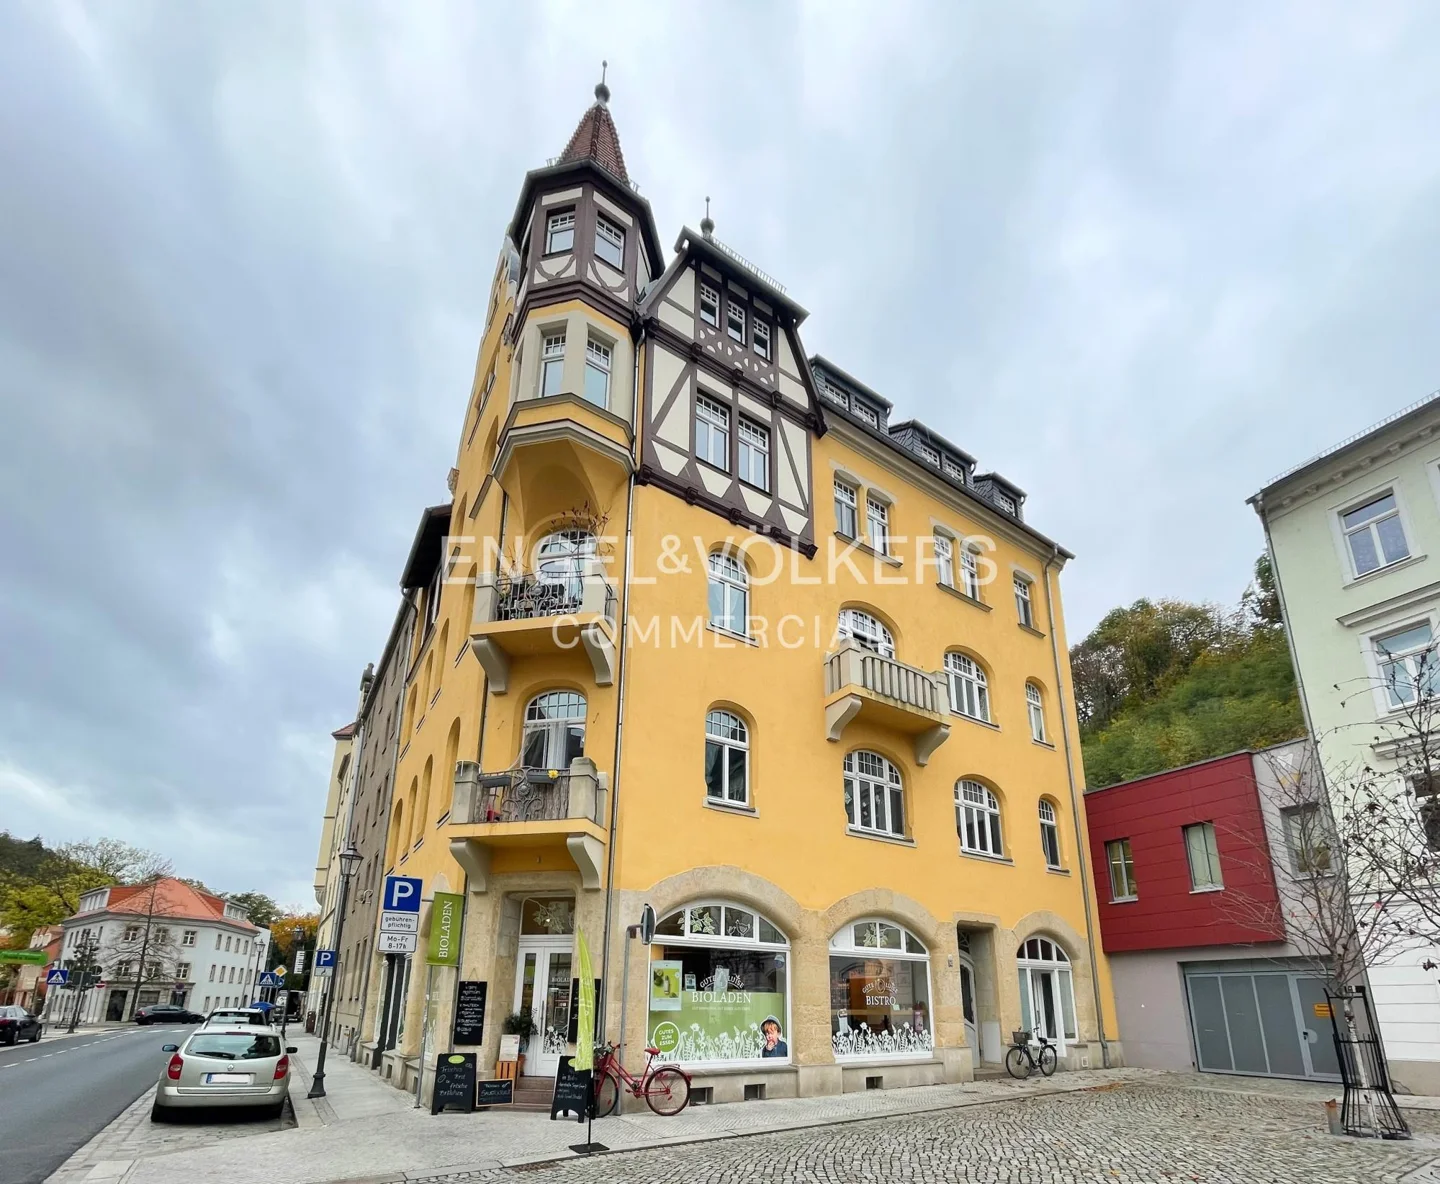 Denkmalgeschütztes Wohn- und Geschäftshaus in der historischen Altstadt